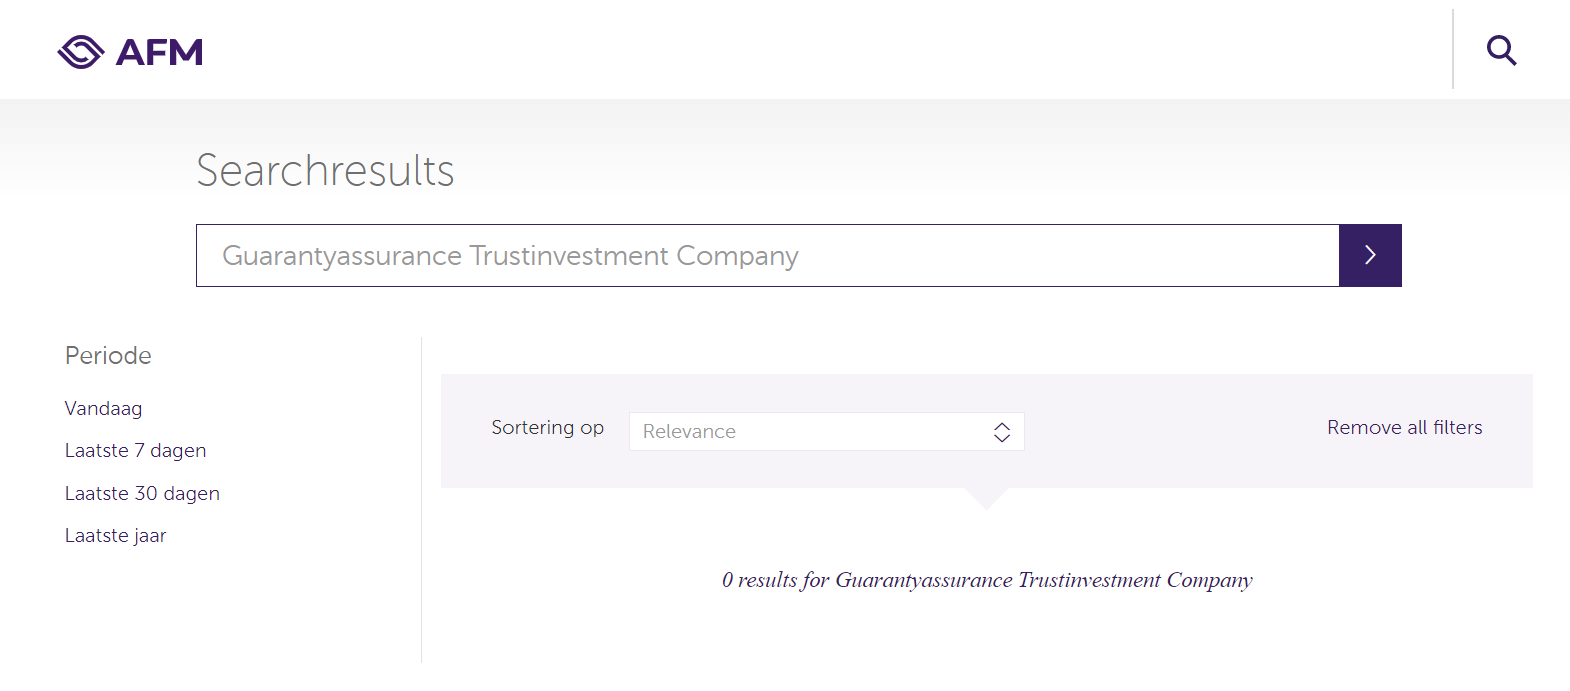 Guarantyassurance Trustinvestment пишет про наличие у себя лицензии от регулятора Нидерландов.